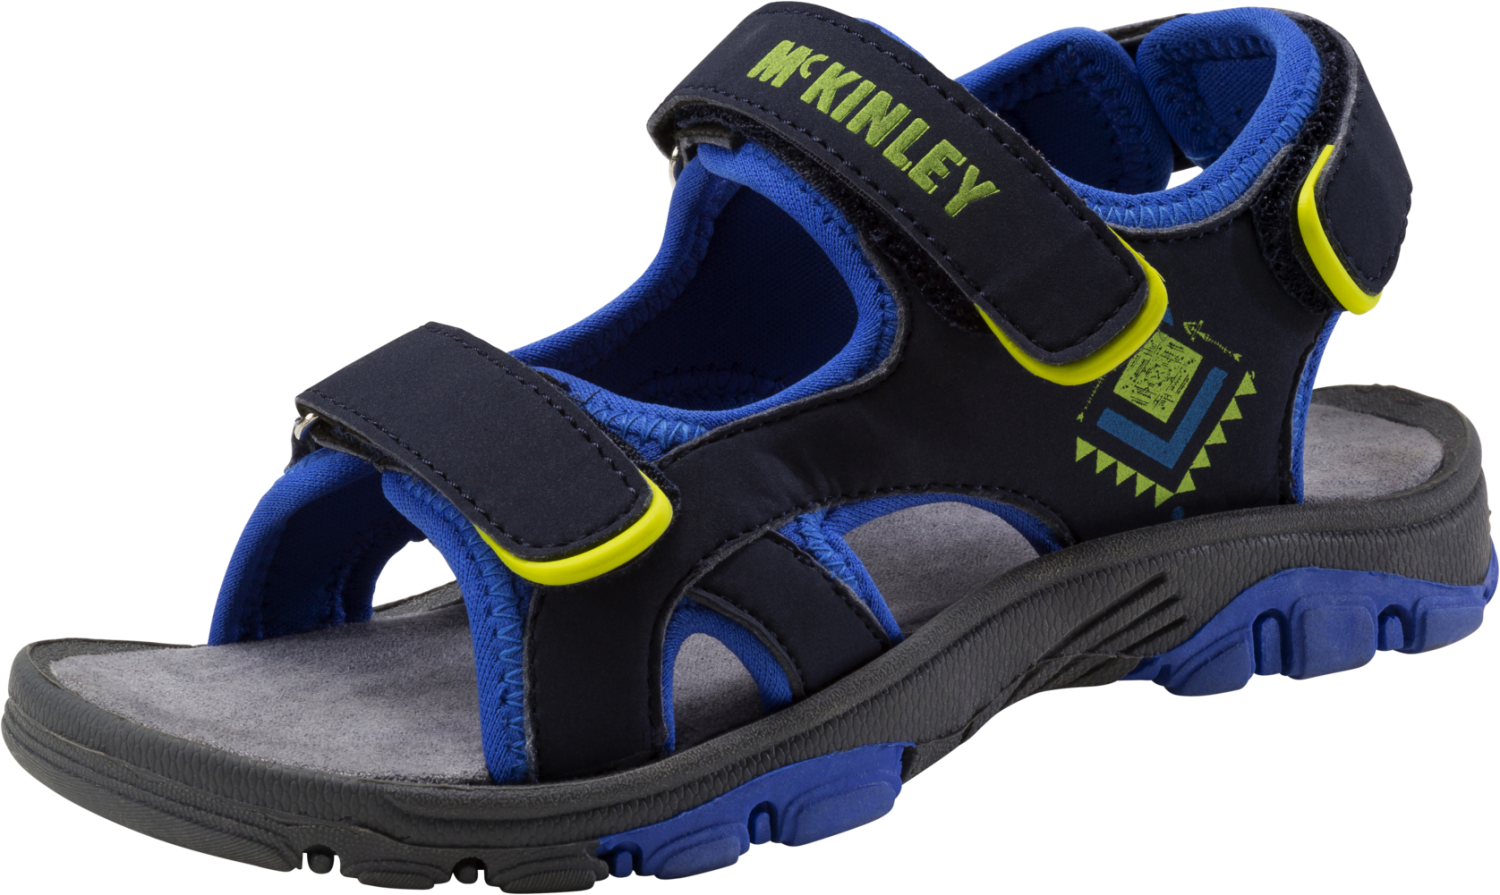 McKINLEY Kinder Jungen Wander Trekking Outdoor Sandale Schuhe Tarriko III 232474 